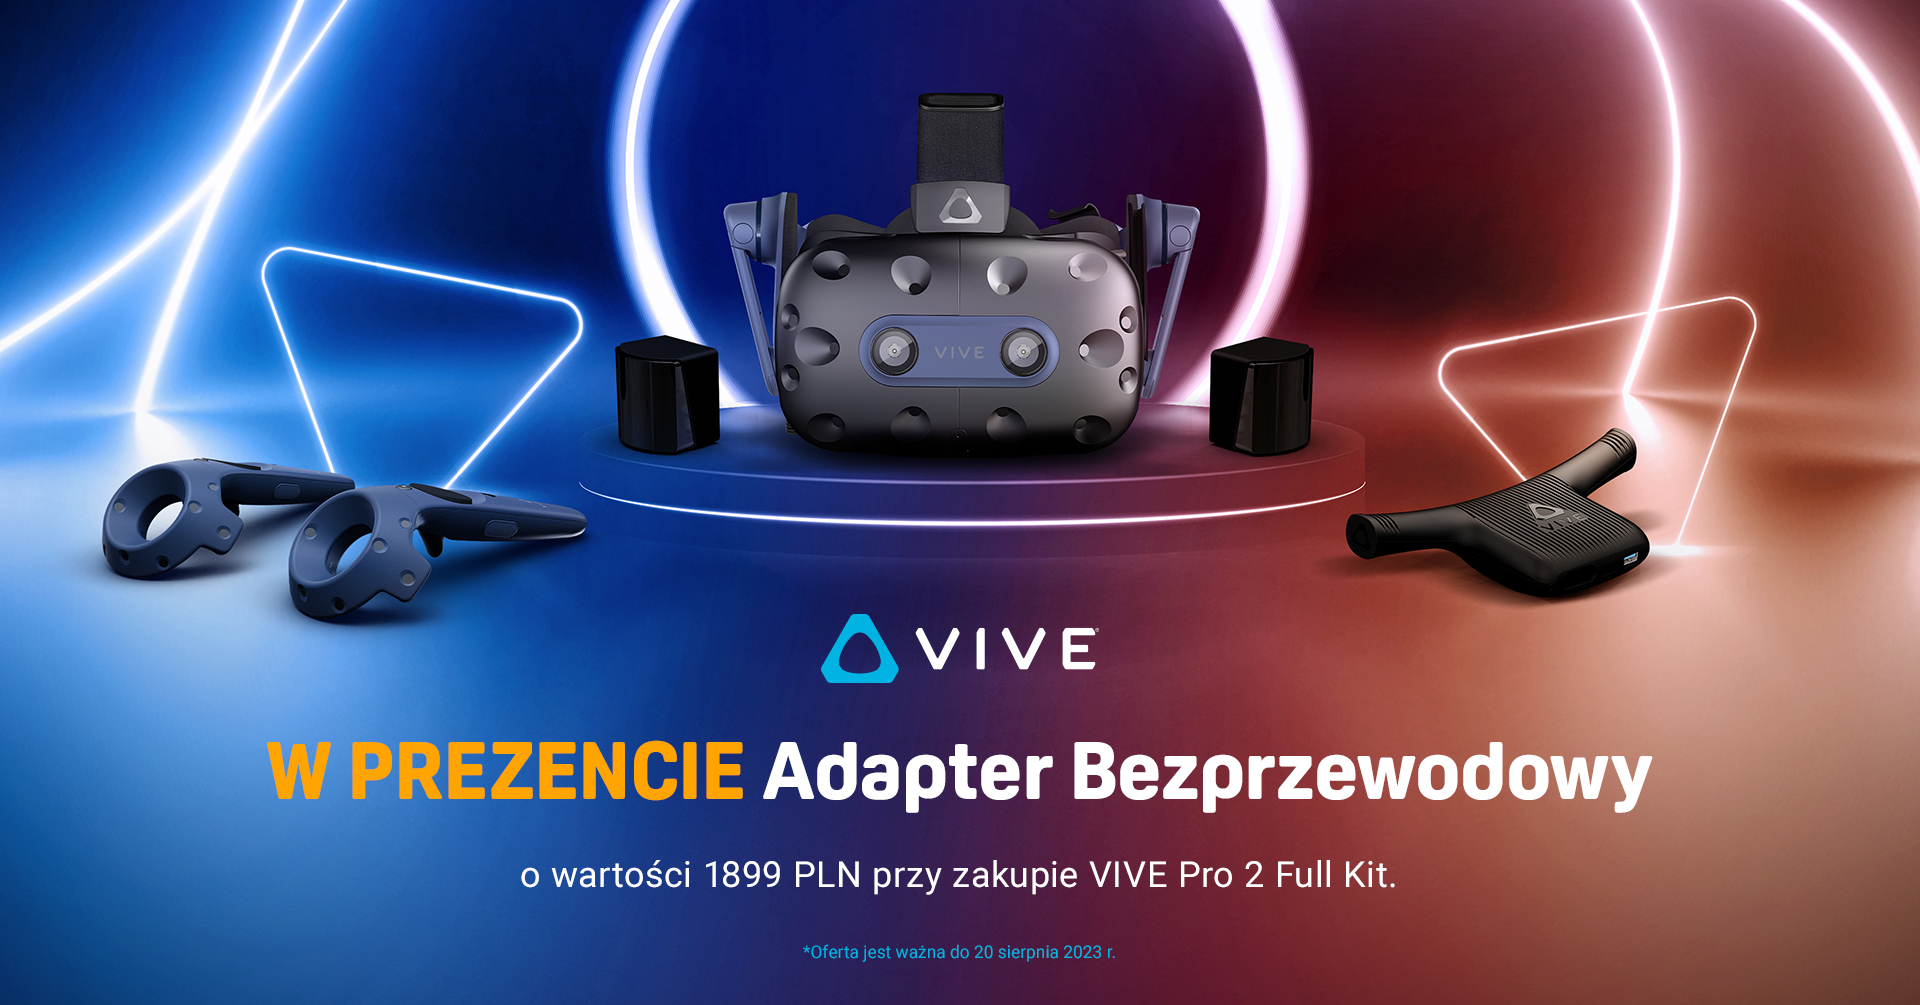 VIVE Pro 2 Full Kit (źródło: VIVE)